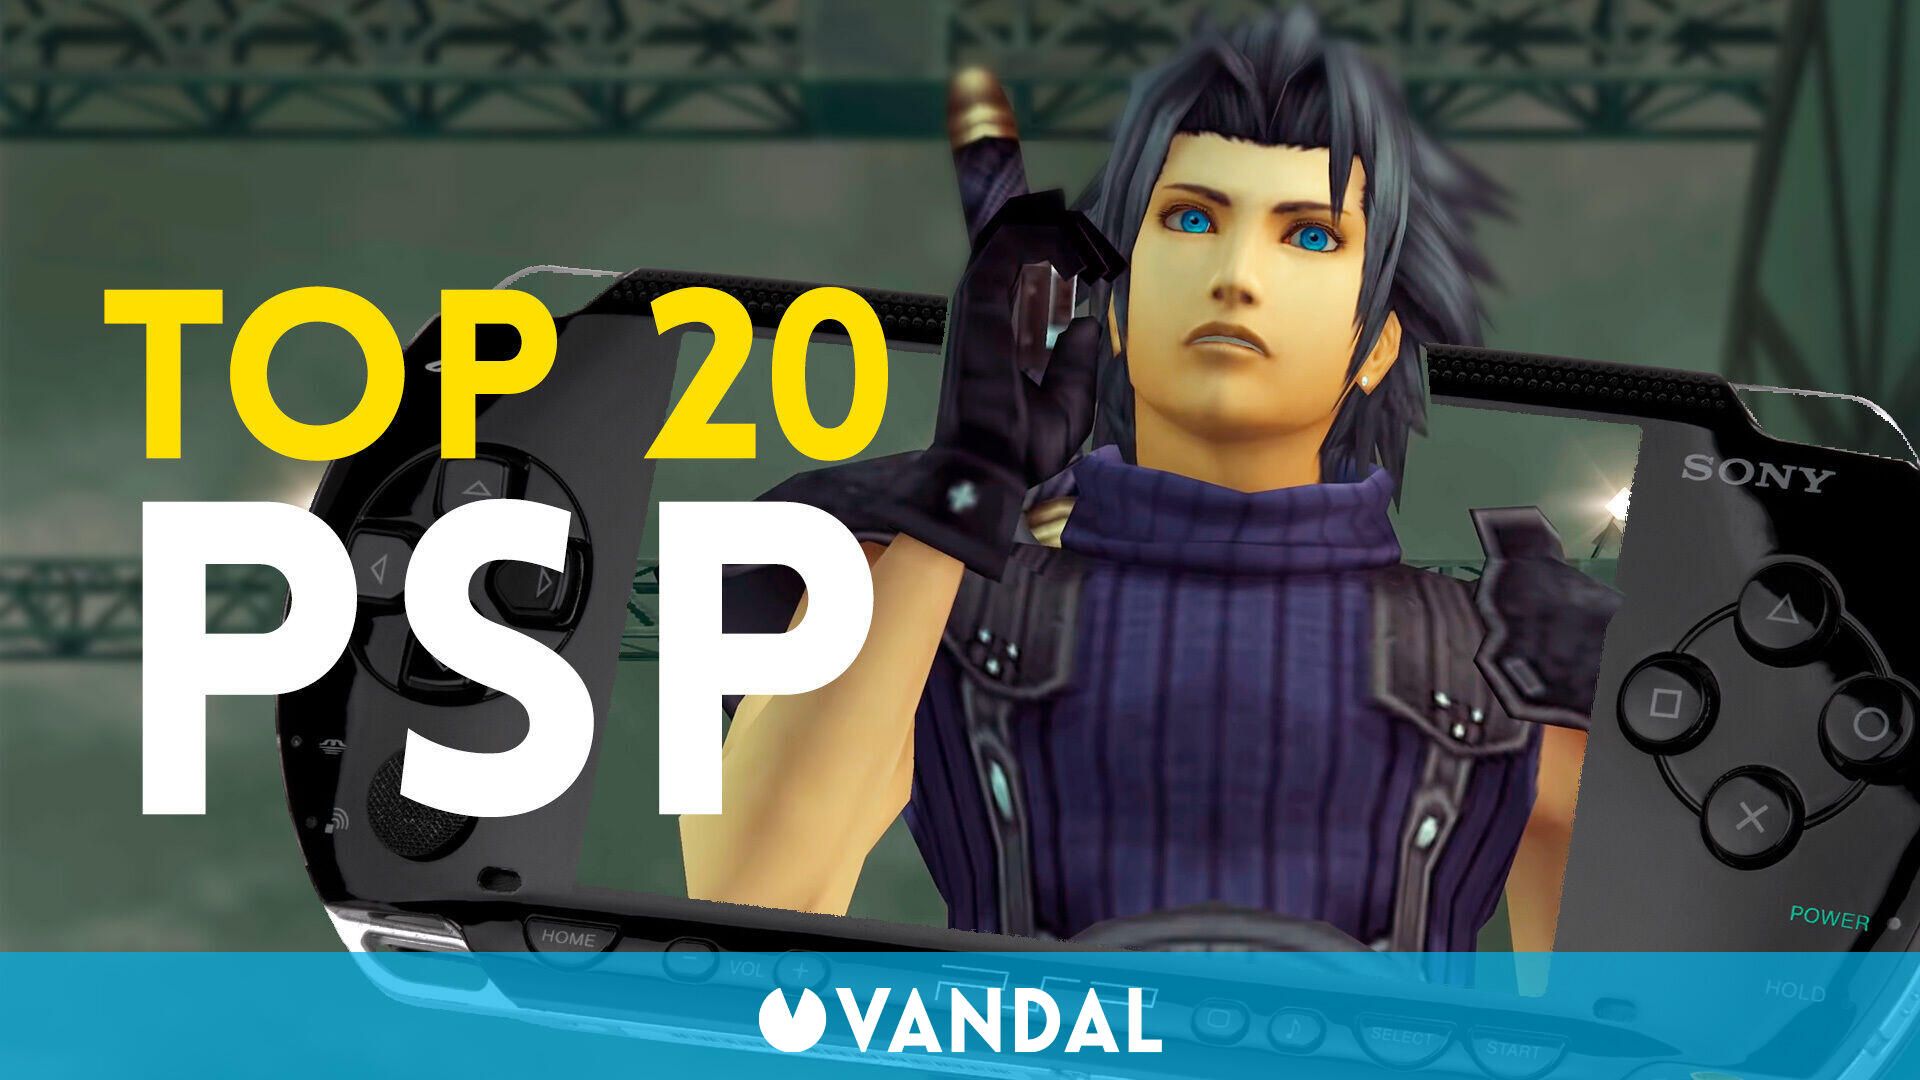 Partido Apéndice Descarte Cuáles son los mejores juegos de PSP? Repasamos nuestro TOP 20 en este  vídeo - Vandal